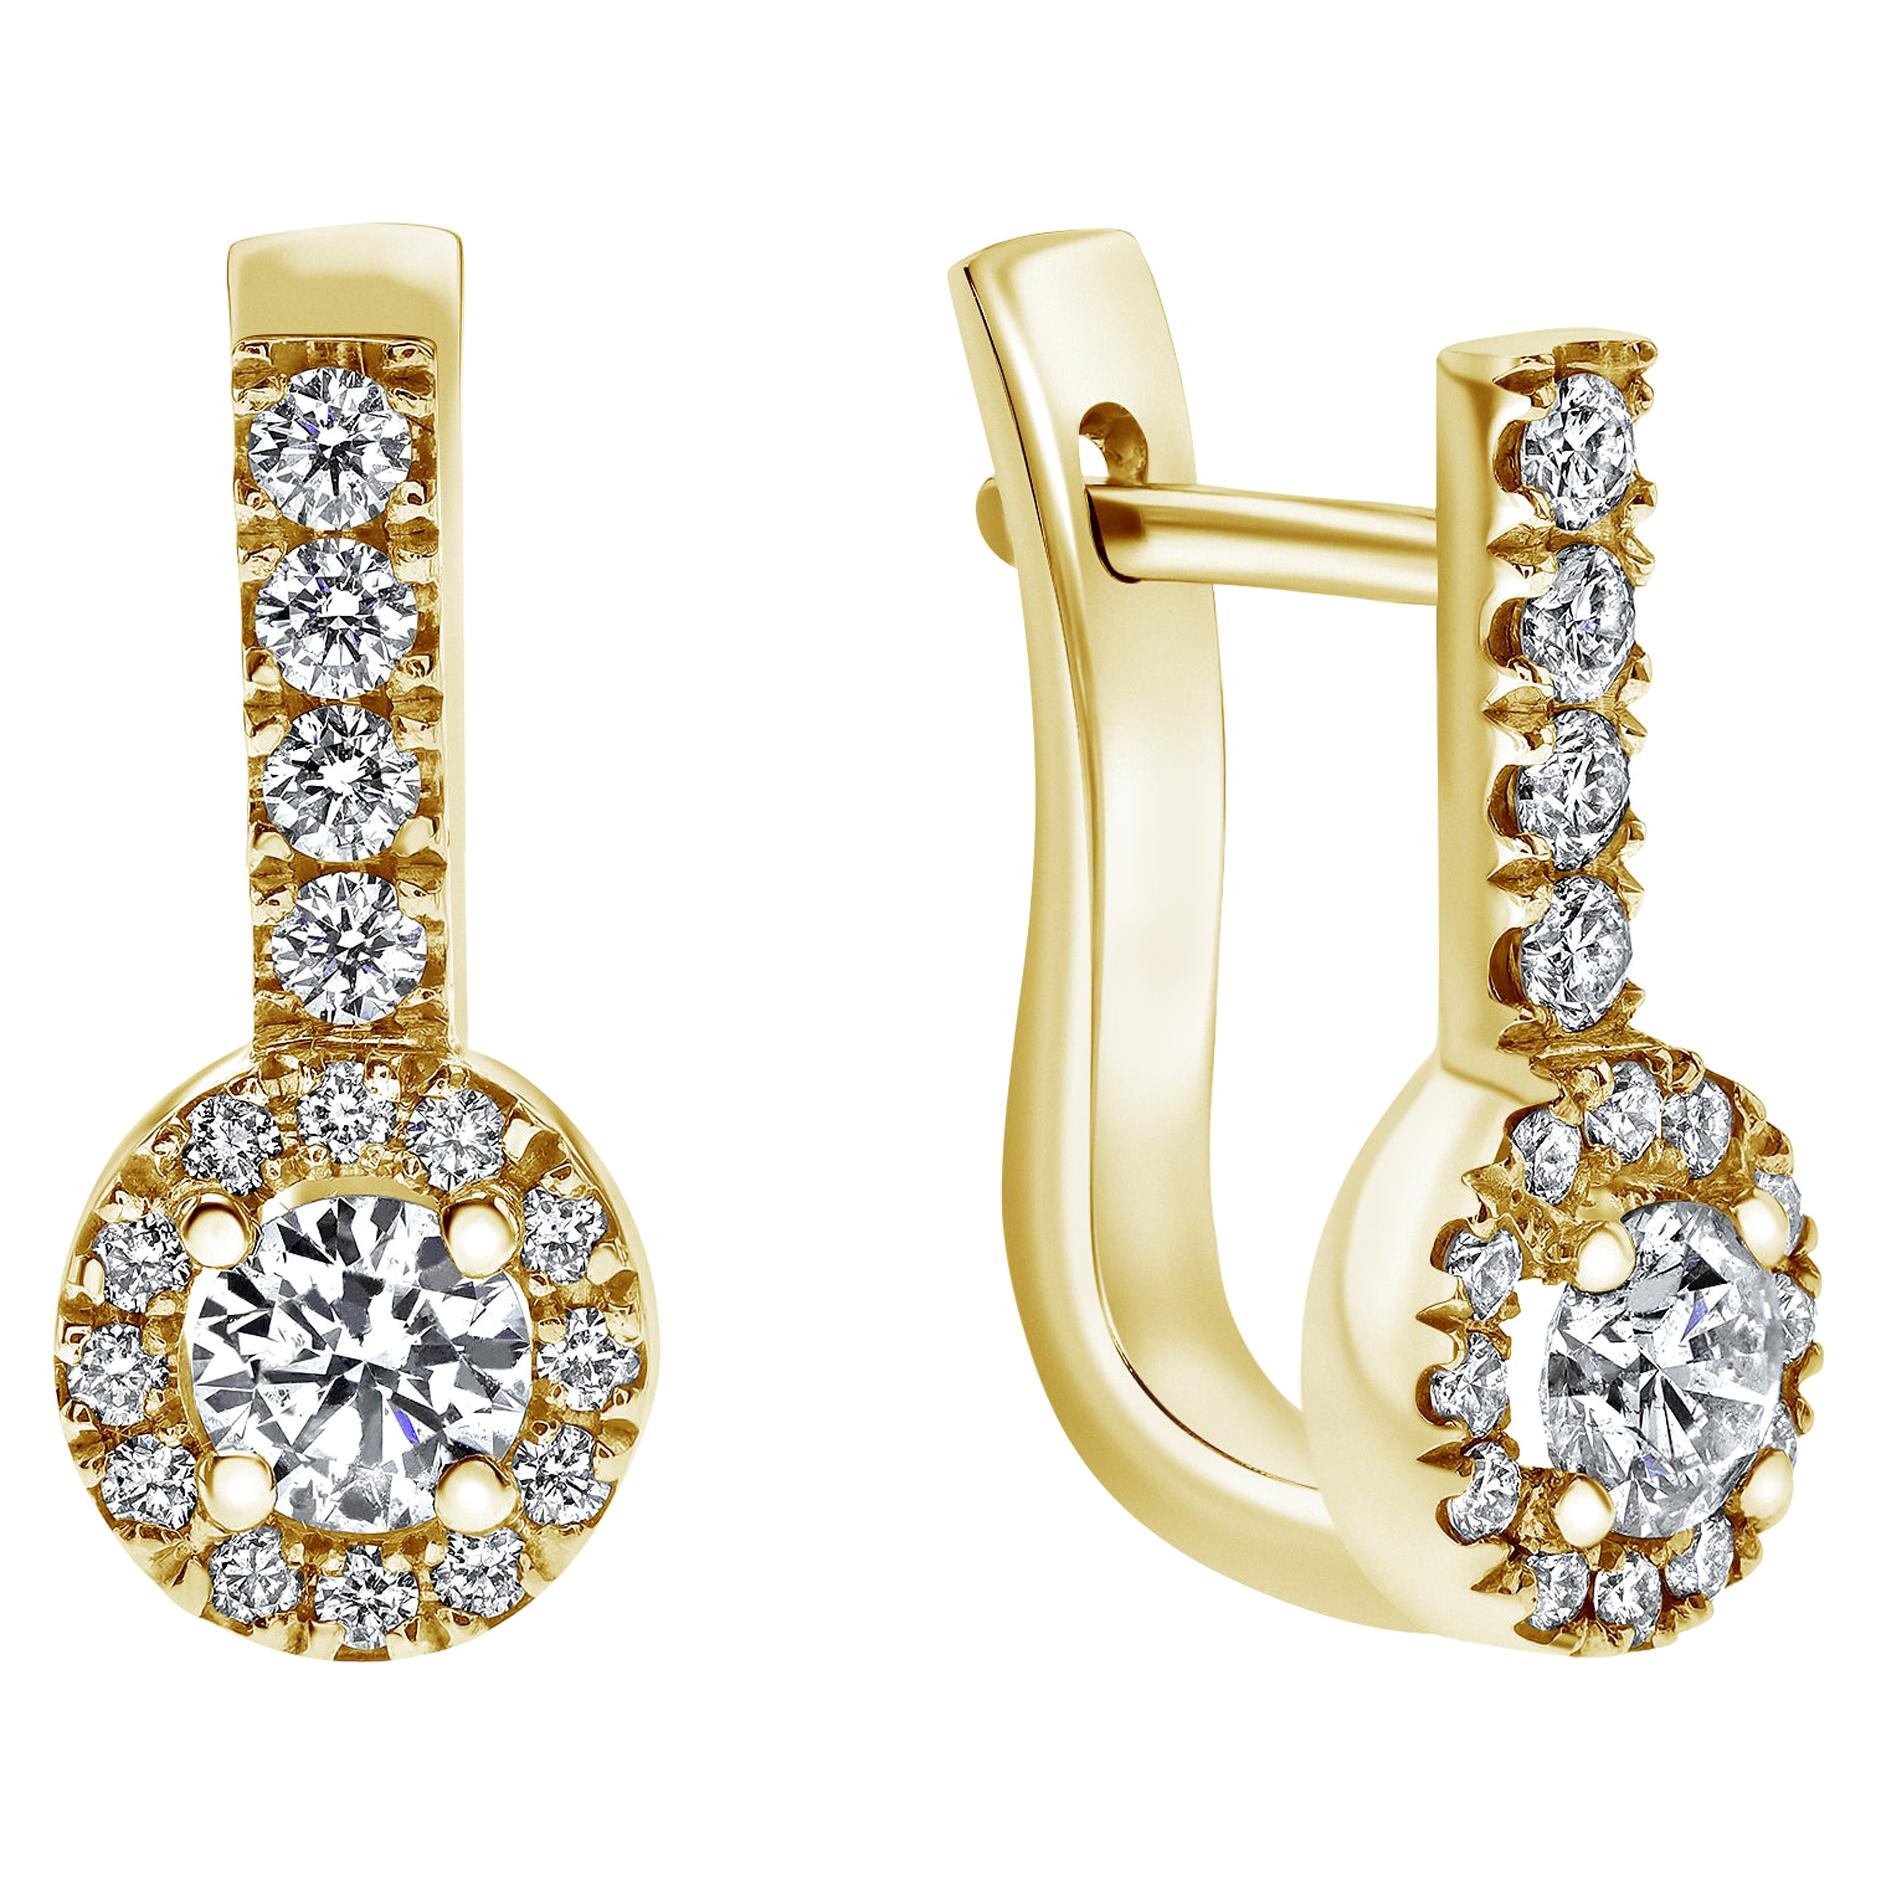 1.10 Carat Edison Diamond Earrings in 14 Karat Yellow Gold, Shlomit Rogel For Sale